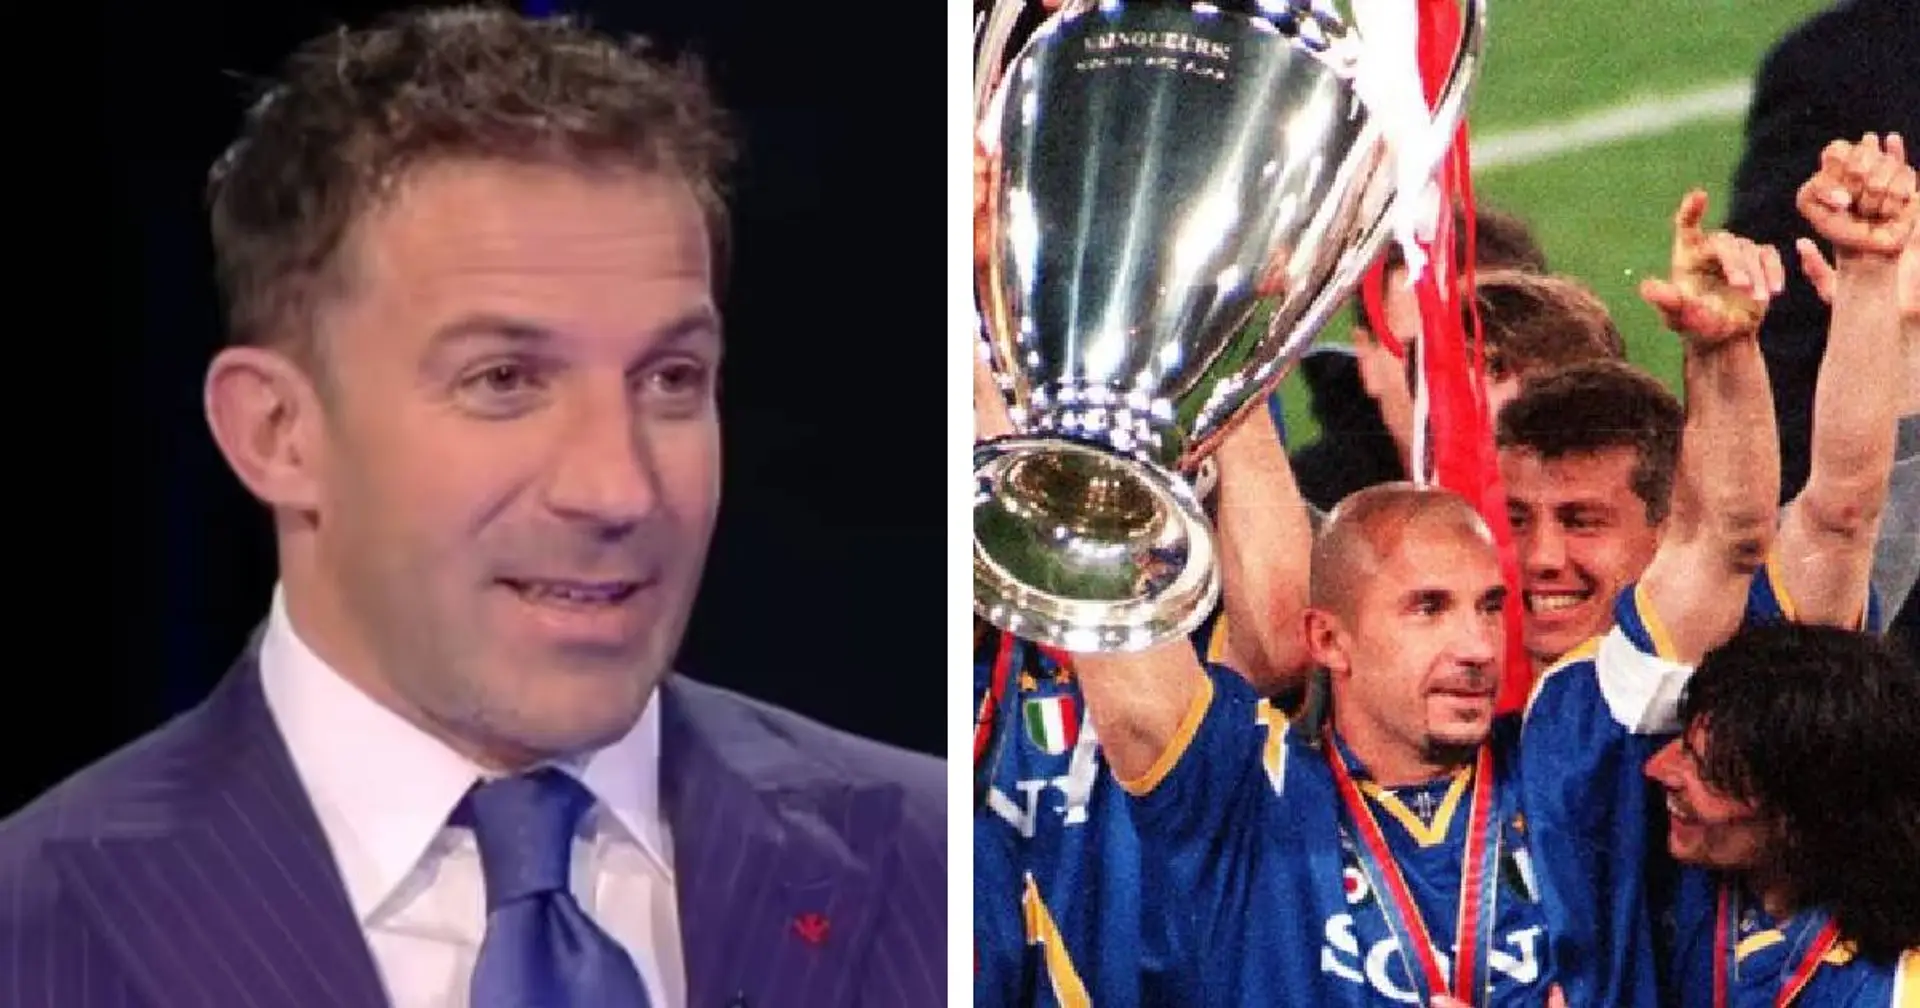 "Juve, l’anno prima eravamo settimi": Del Piero carica i bianconeri e fa sognare i tifosi con un esempio 'stellare' 